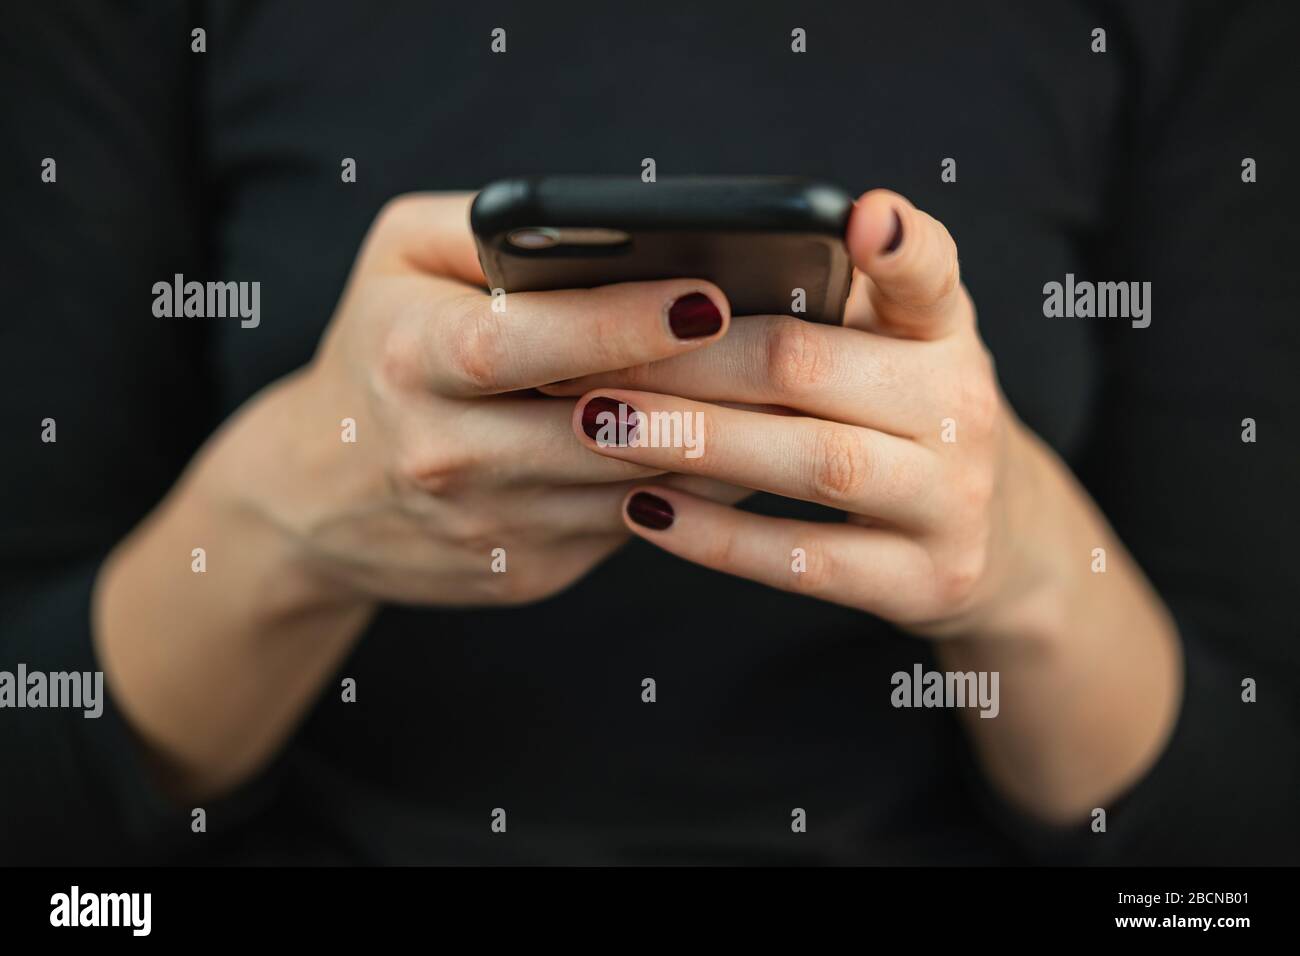 SMS über Smartphone auf dem Telefon. Weibliche Hände mit einem Smartphone, das Text eingibt und scrollt, Nahansicht Stockfoto